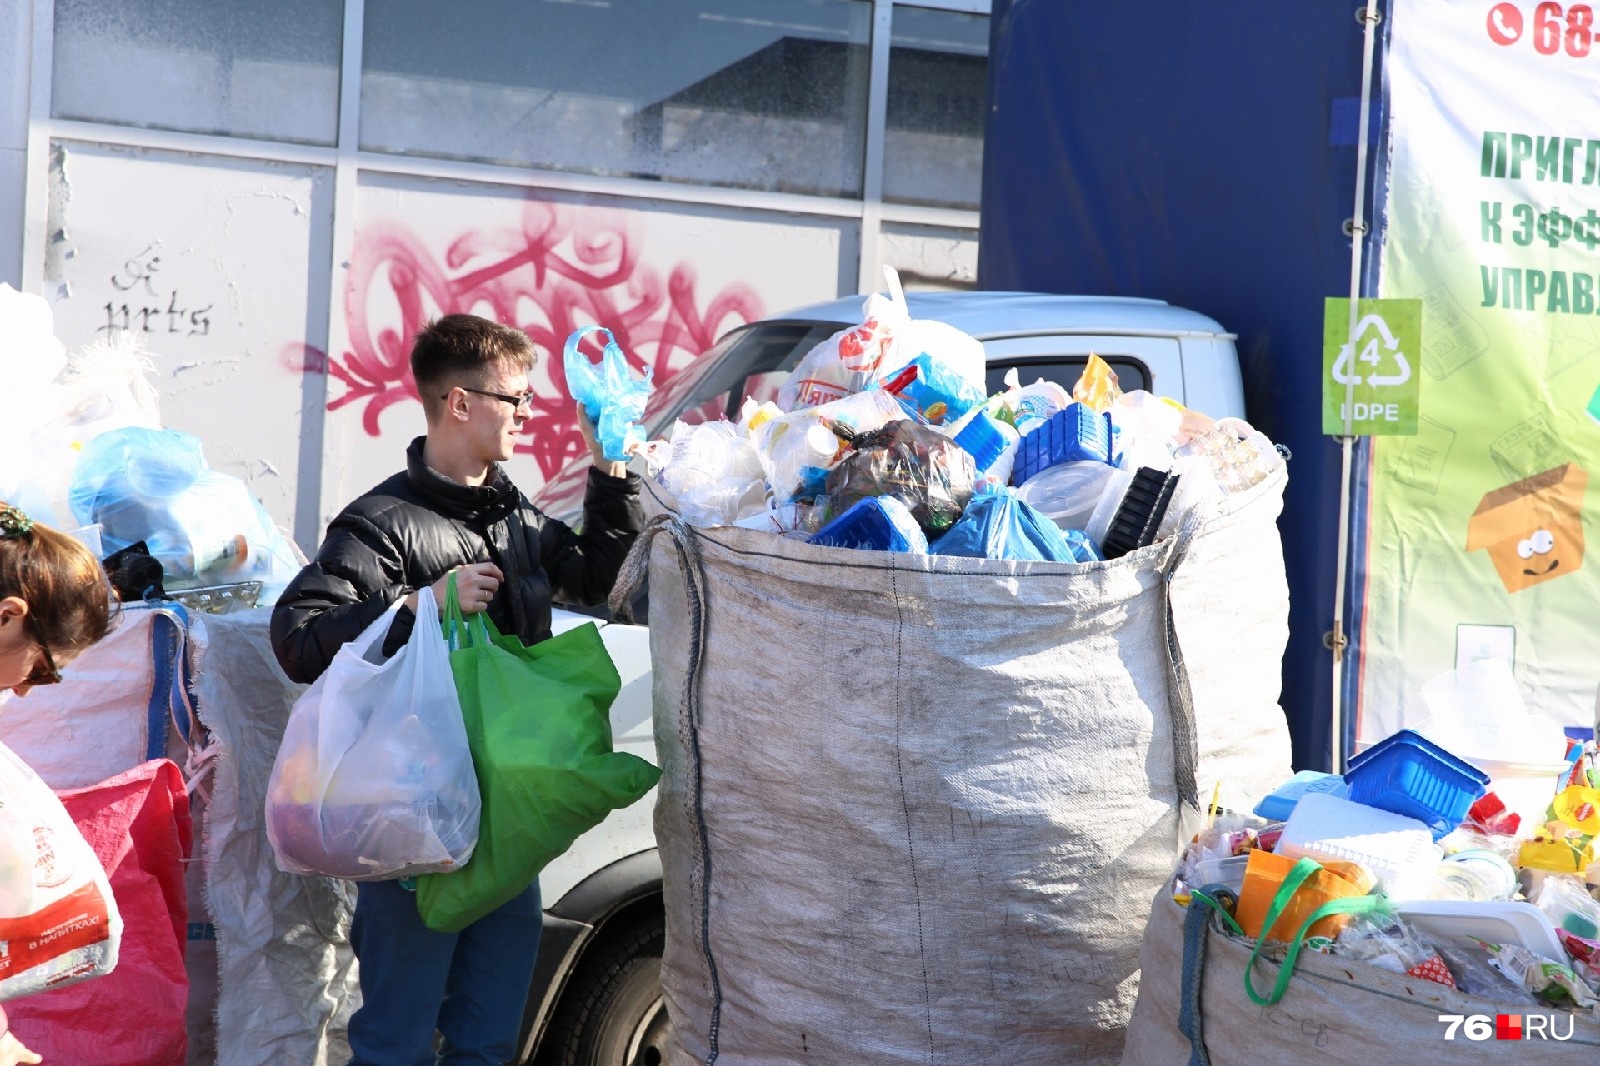 Отдайте нам ваш мусор: ярославские активисты устроят экологическую акцию. Где и когда